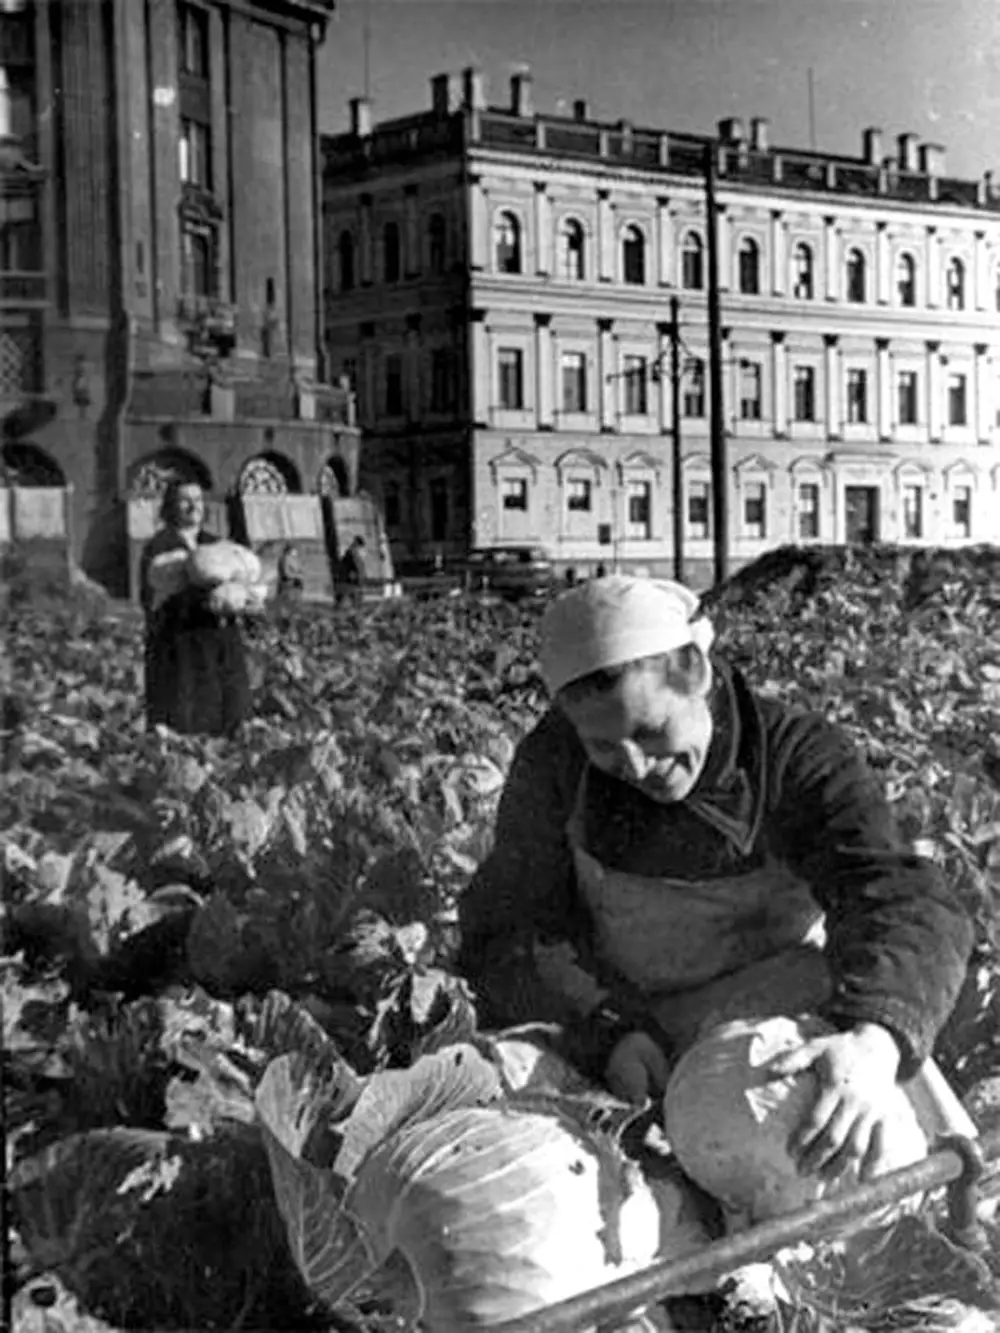 исаакиевский собор в блокаду ленинграда